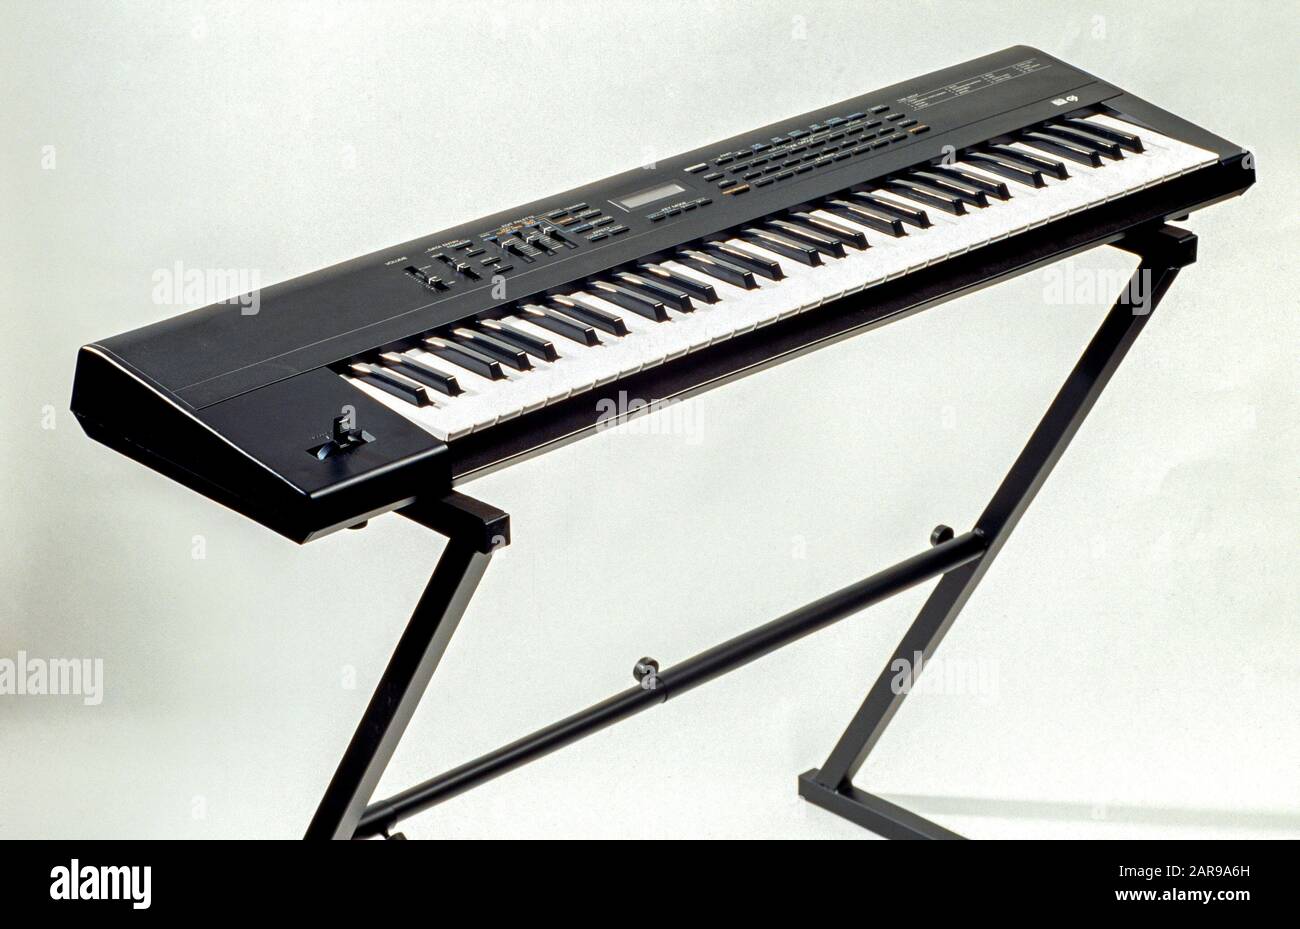 Eine elektronische Tastatur oder digitale Tastatur ist ein elektronisches Musikinstrument, eine elektronische oder digitale Ableitung von Tasteninstrumenten. Elektronische Keyboards sind in der Lage, eine Vielzahl von Instrumentenklängen (Klavier, E-Piano, Hammond-Orgel, Pfeifenorgel, Geige usw.) und Synthesizer-Tönen mit weniger komplexer Klangsynthese nachzubilden. Stockfoto